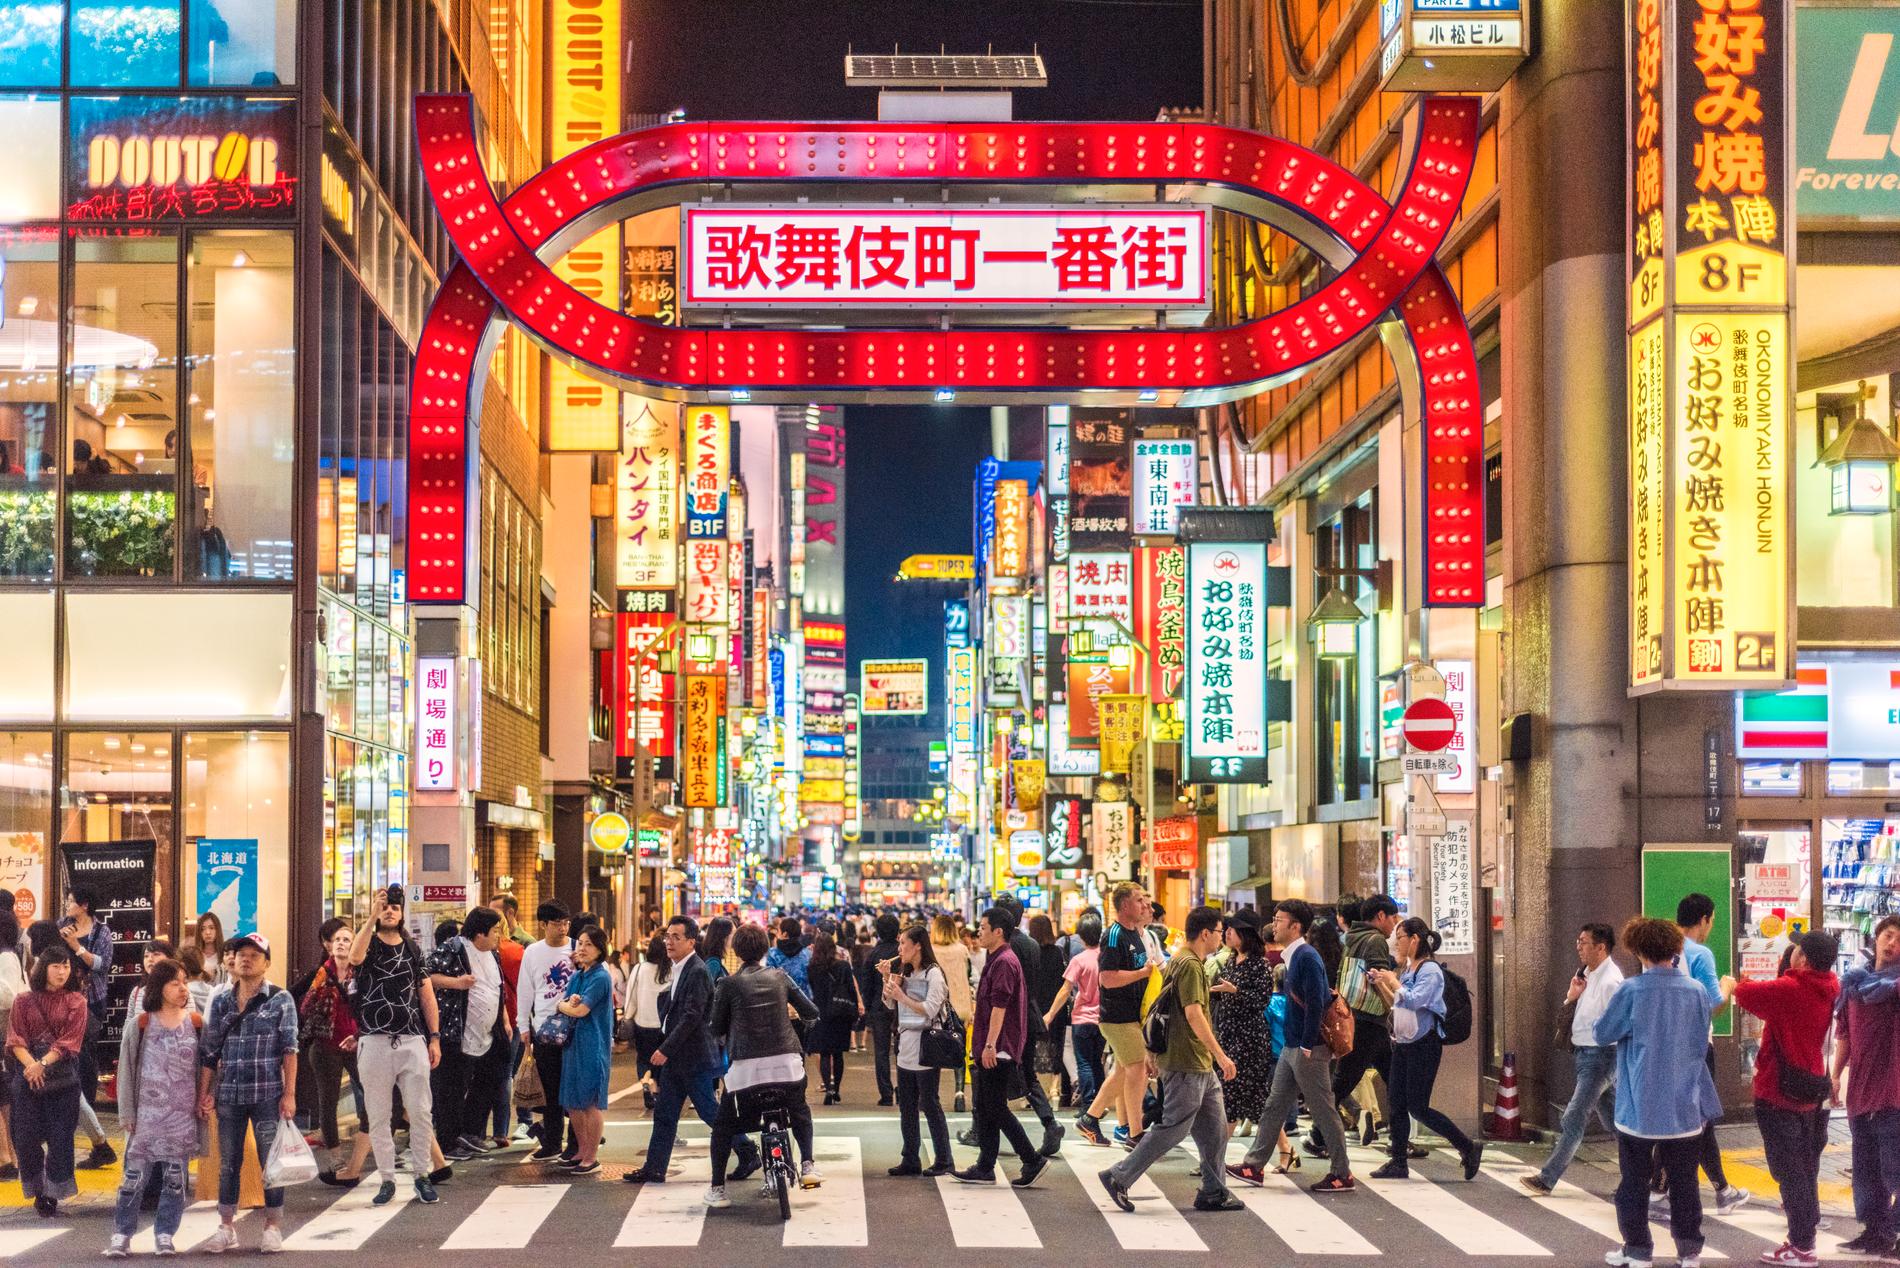 Tokyo är den säkraste staden enligt undersökningen. 